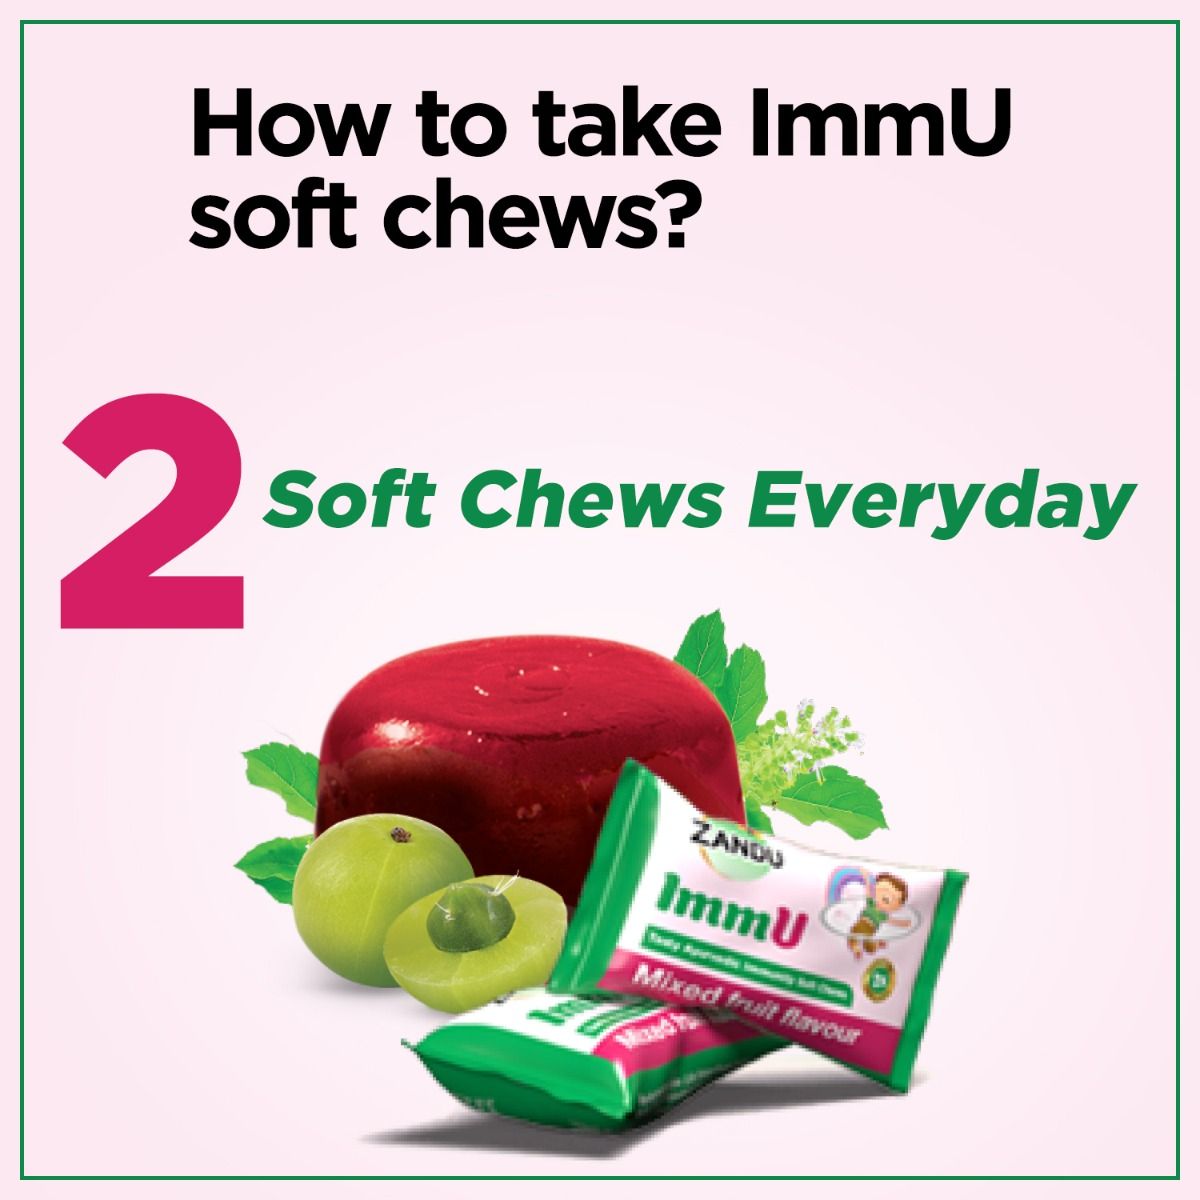 Zandu ImmU Tasty Ayurvedic Immunity Soft Chews Mixed Flavour Jellies, 84 gm, Pack of 1 